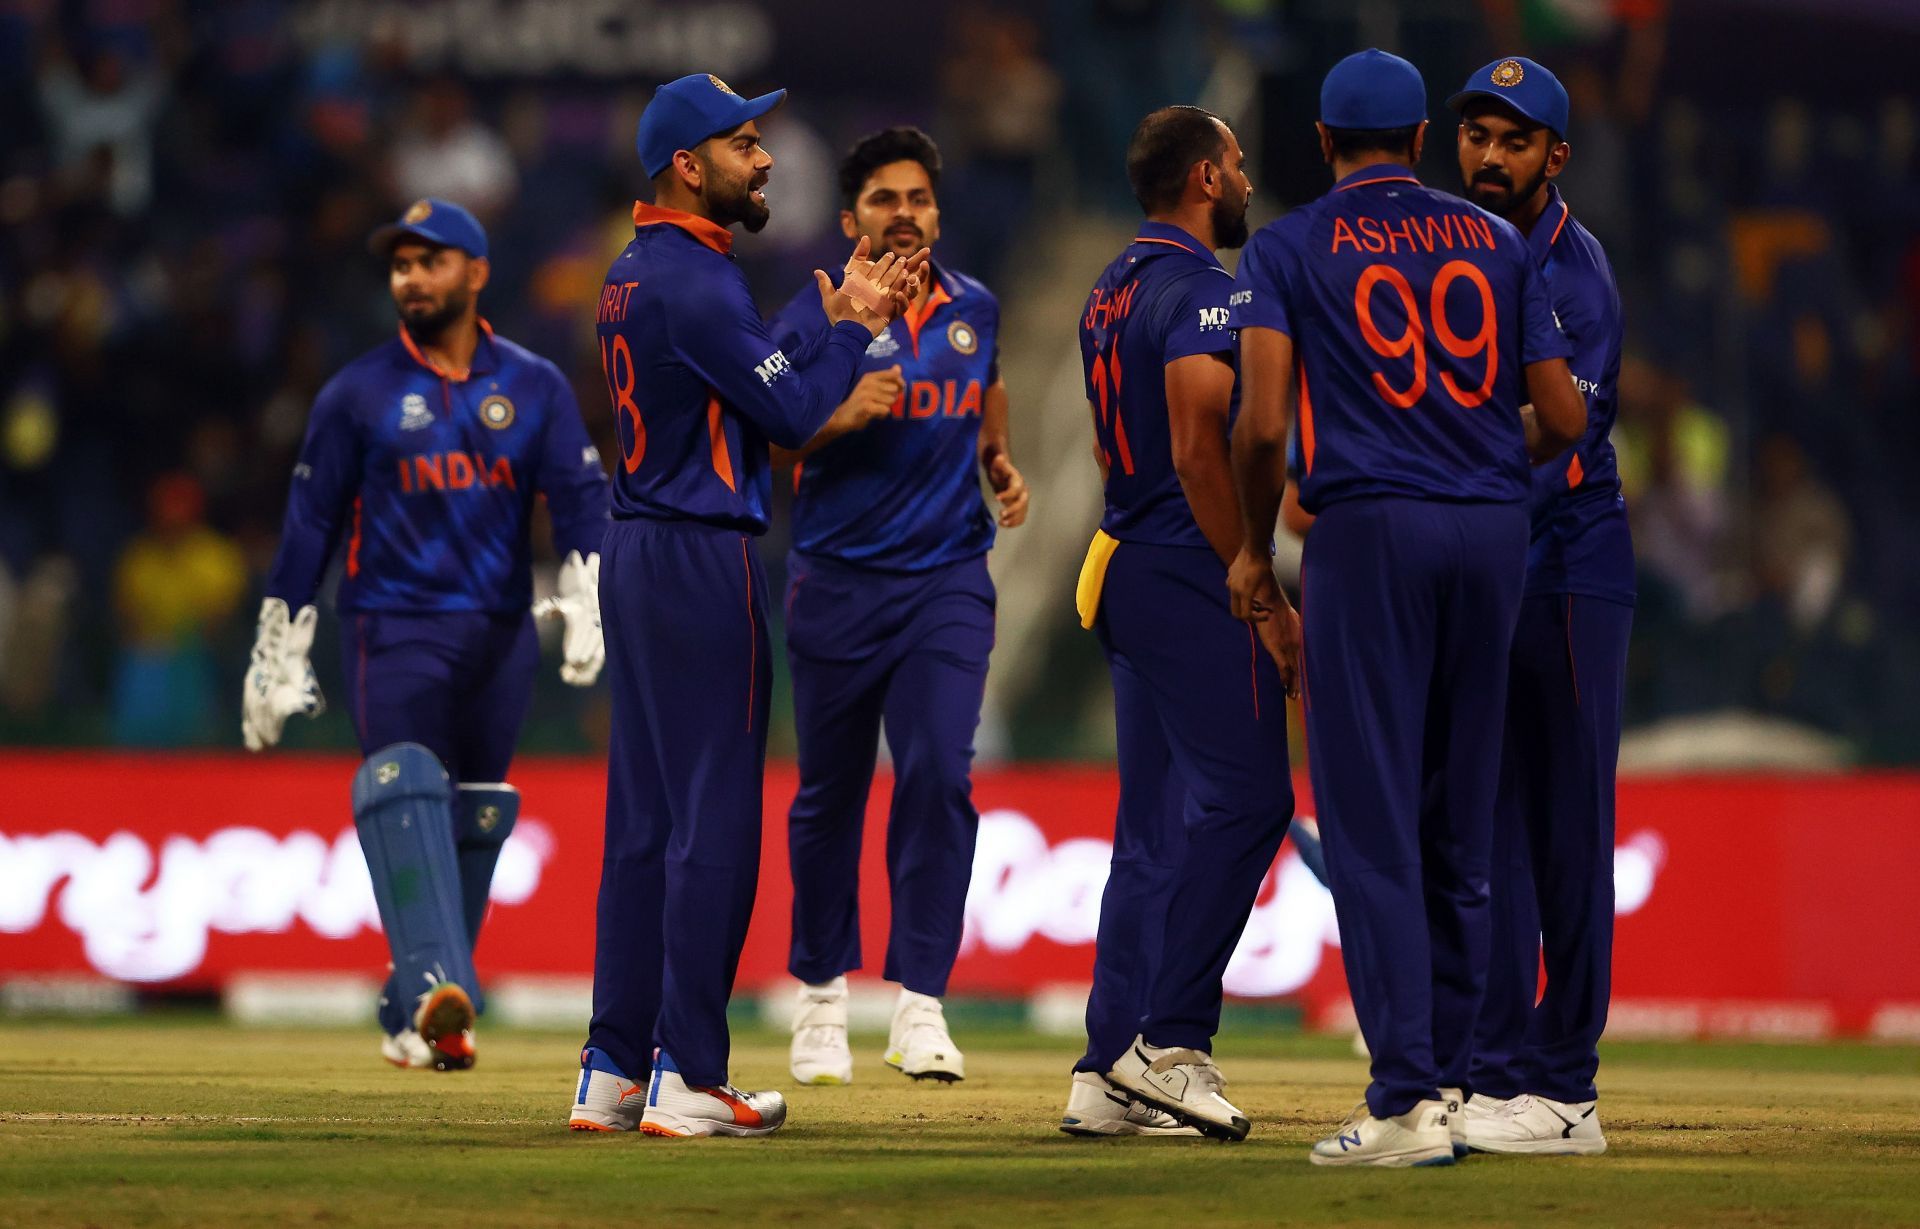 India struggled against New Zealand and Pakistan